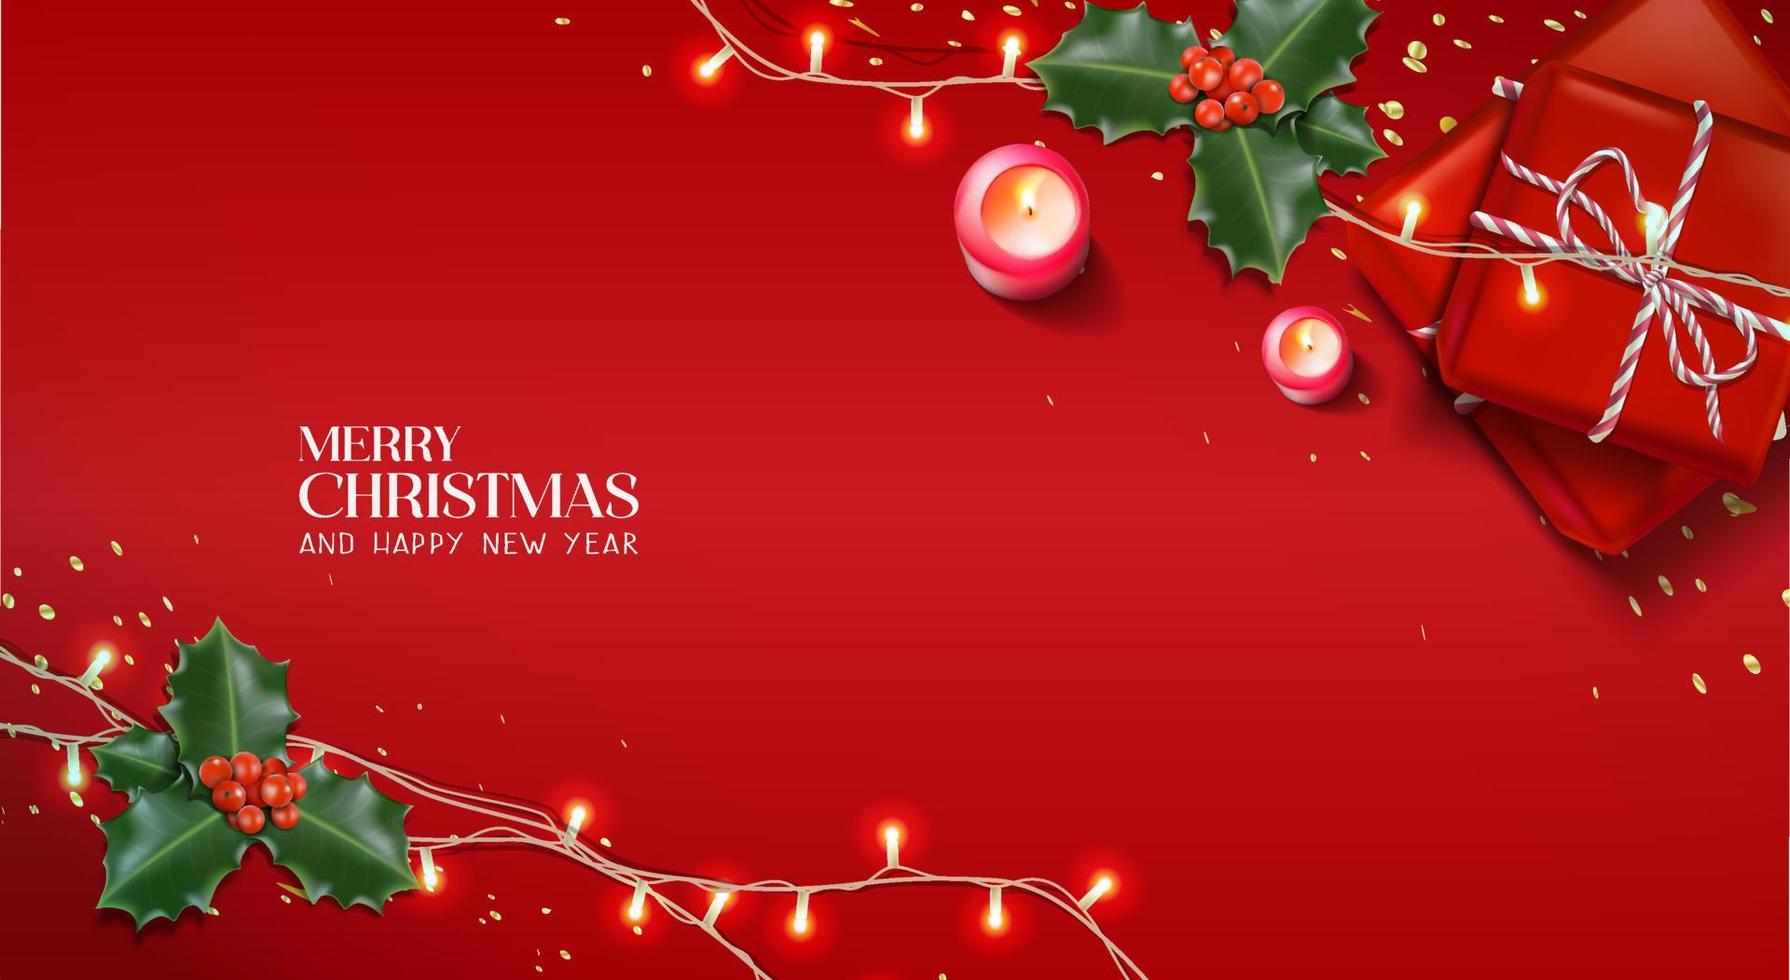 vektorrealistischer weihnachts- und neujahrshintergrund, banner, flyer, grußkarte, postkarte. quadratische Ausrichtung. Roter Hintergrund mit Geschenkboxen und Kerzen mit Mistel. vektor